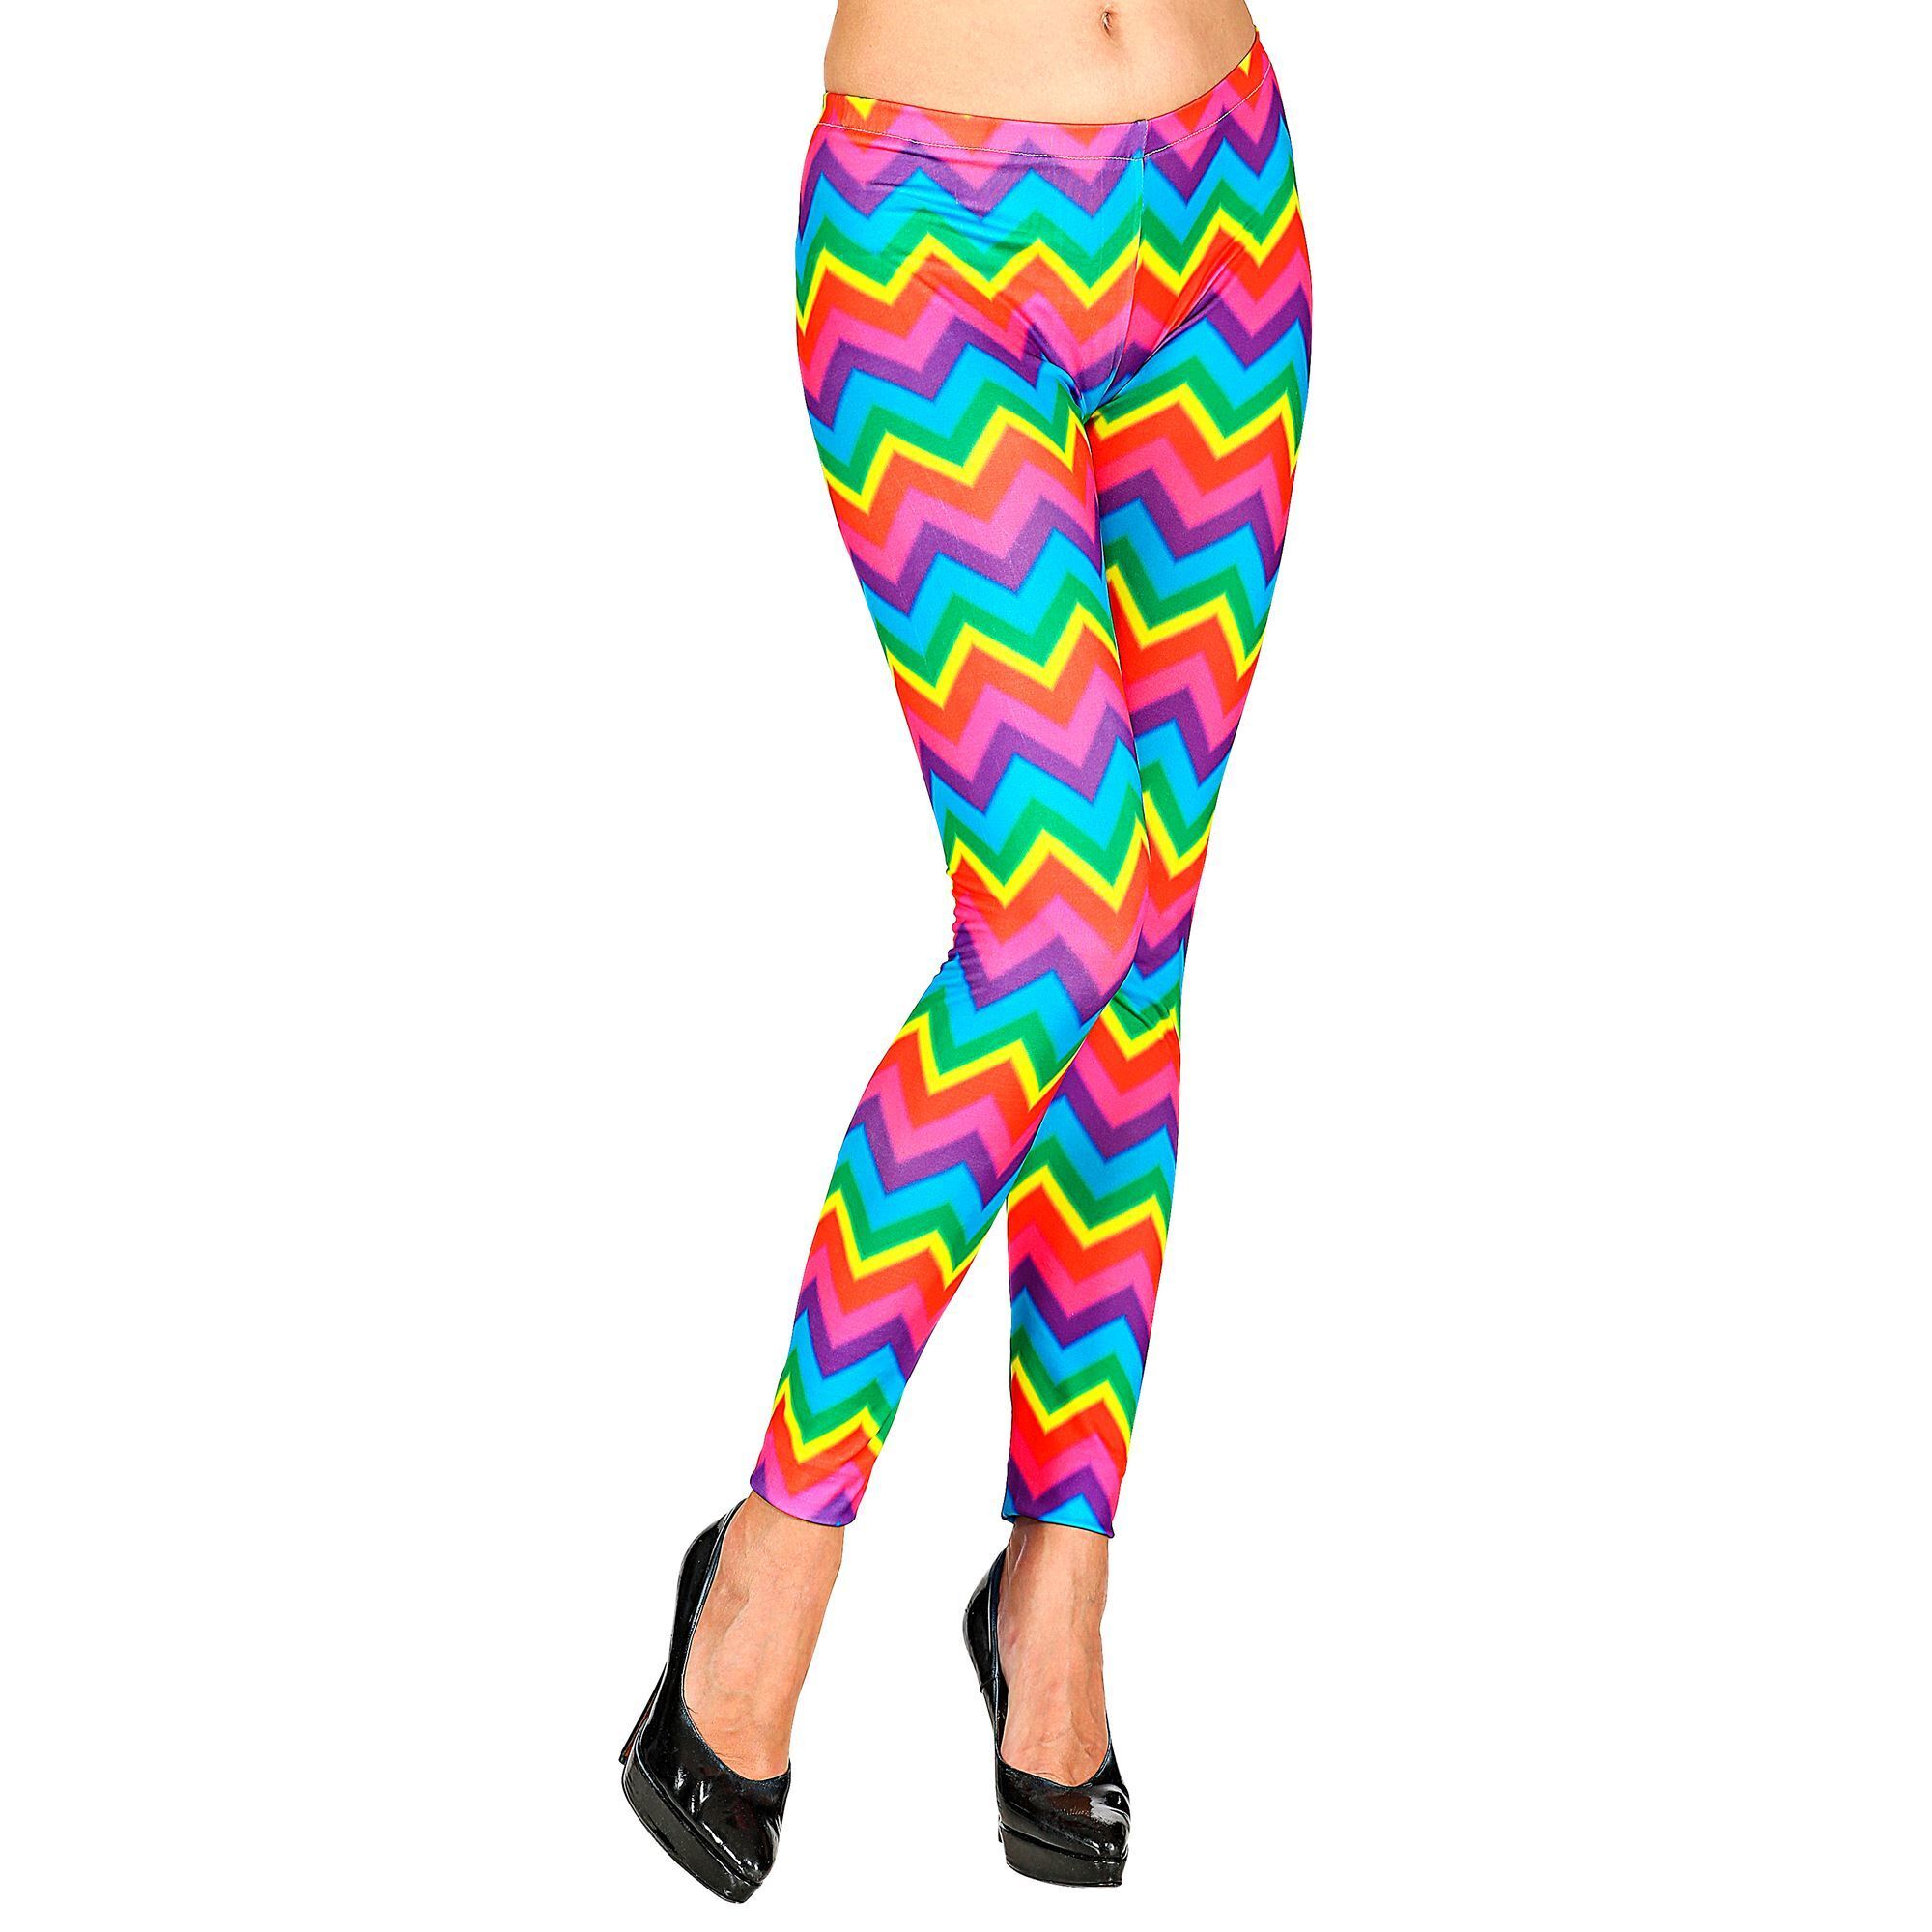 Disco broek regenboog legging jaren 80